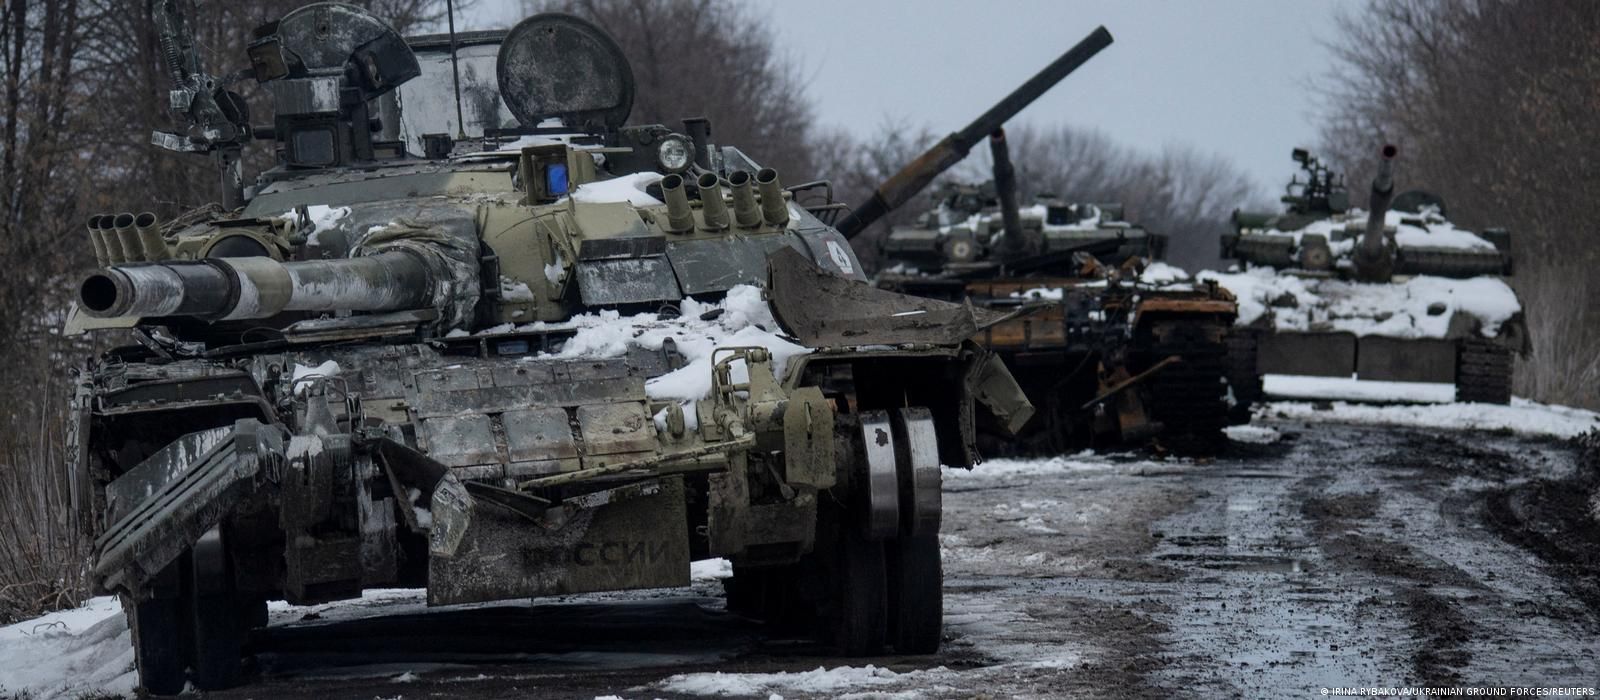 Керівництво росії розуміє, що план швидкого захоплення України нездійсненний